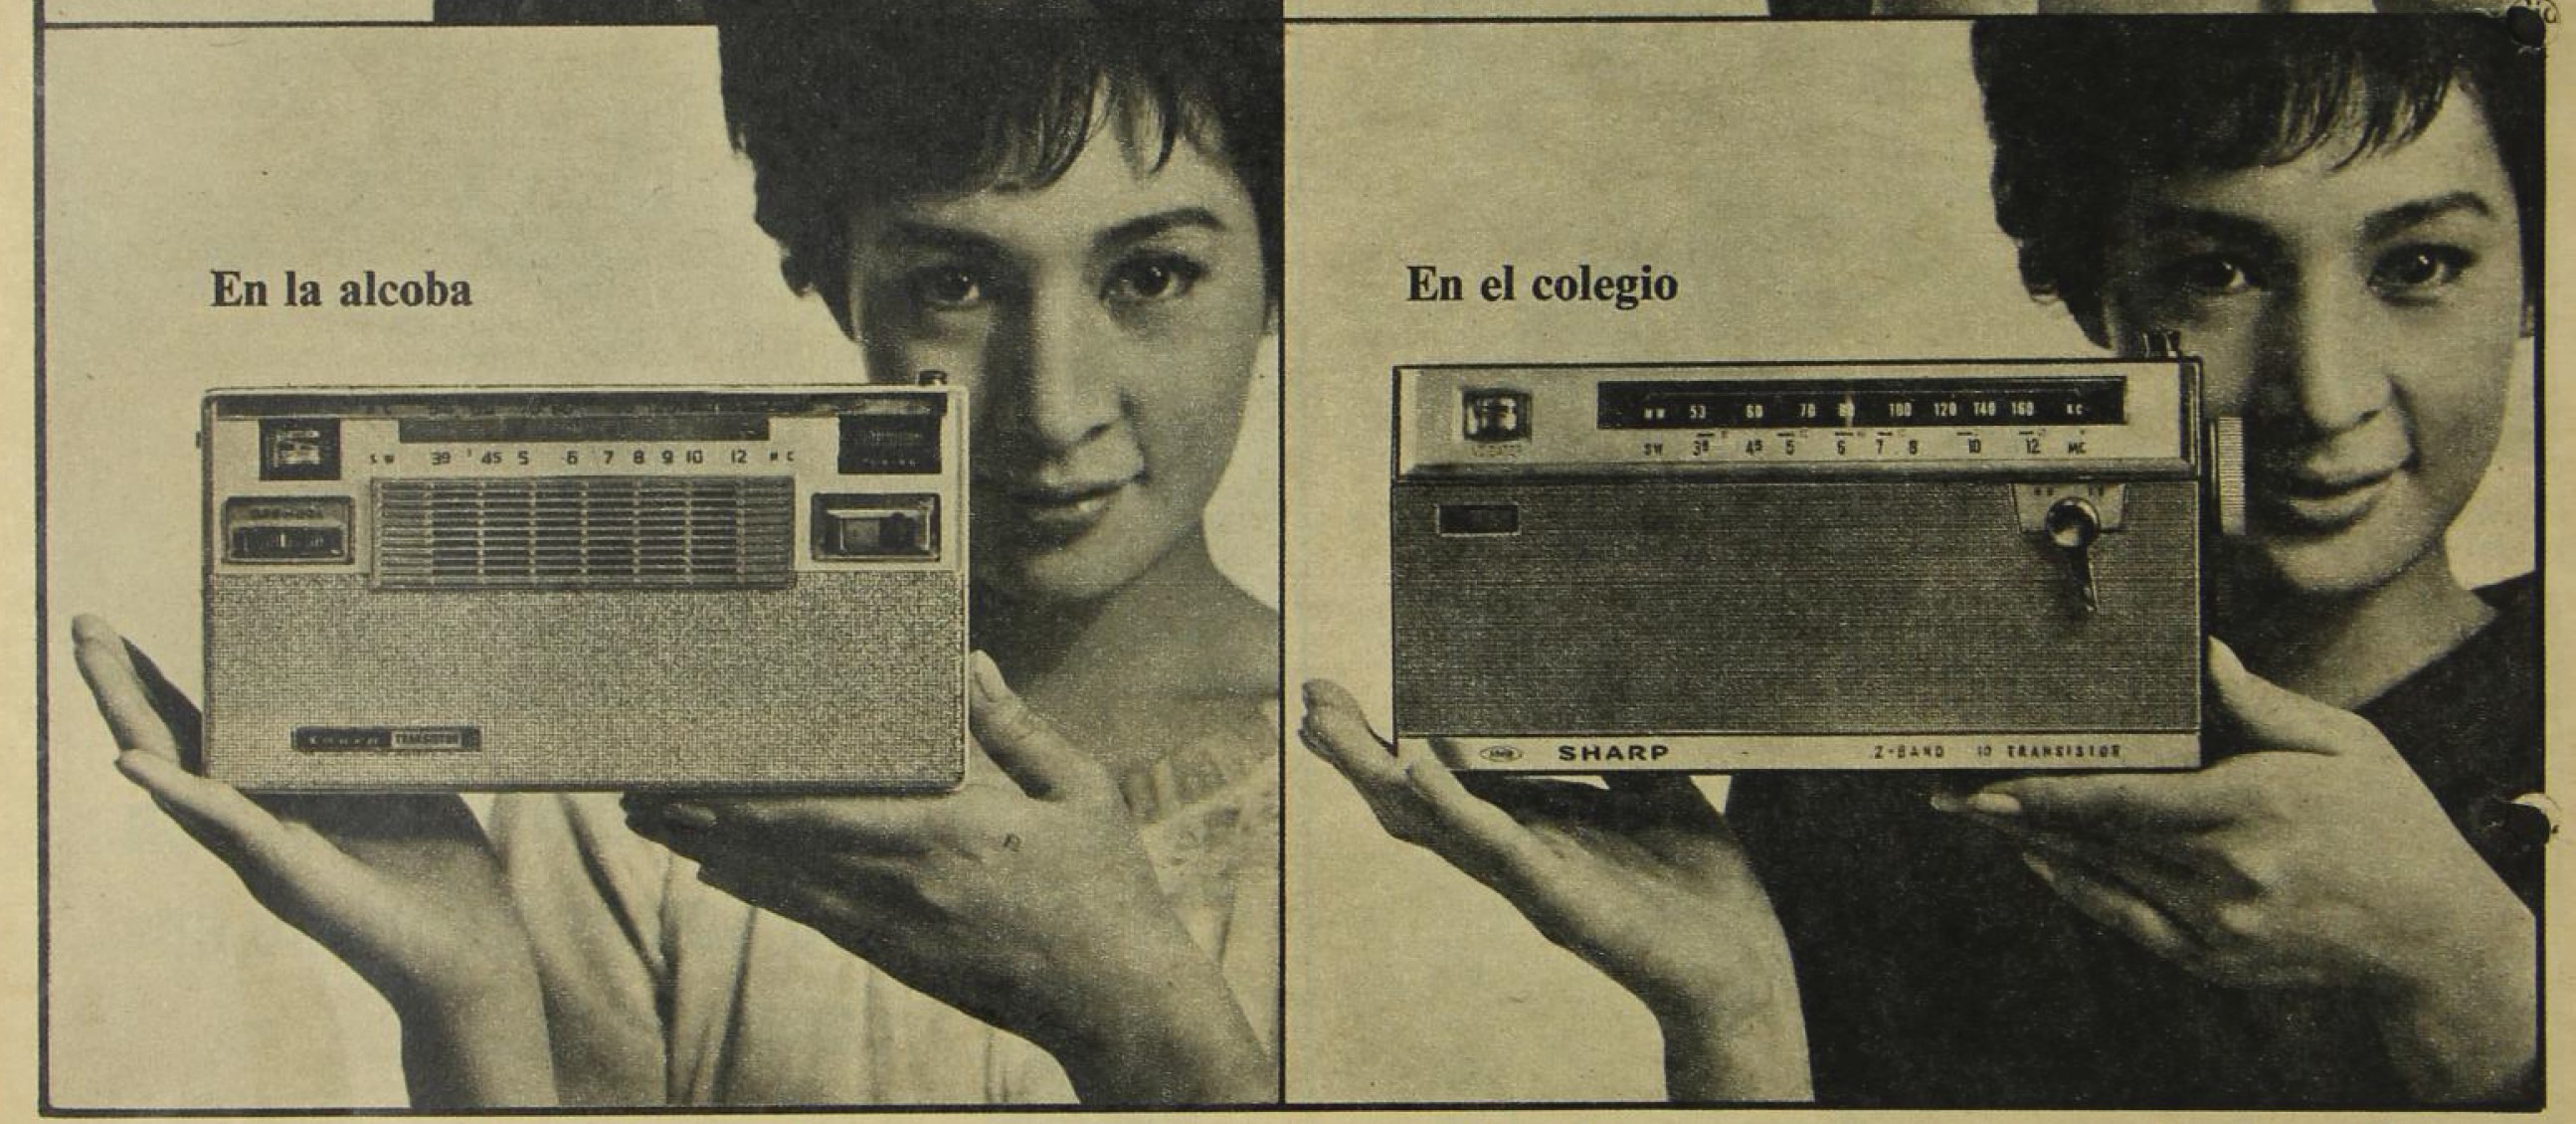 Una época en que la radio era uno de los aparatos más importantes, cada vez más portátiles y para diferentes espacios dentro y fuera de casa.  (Foto Prensa Libre: Hemeroteca Prensa Libre).